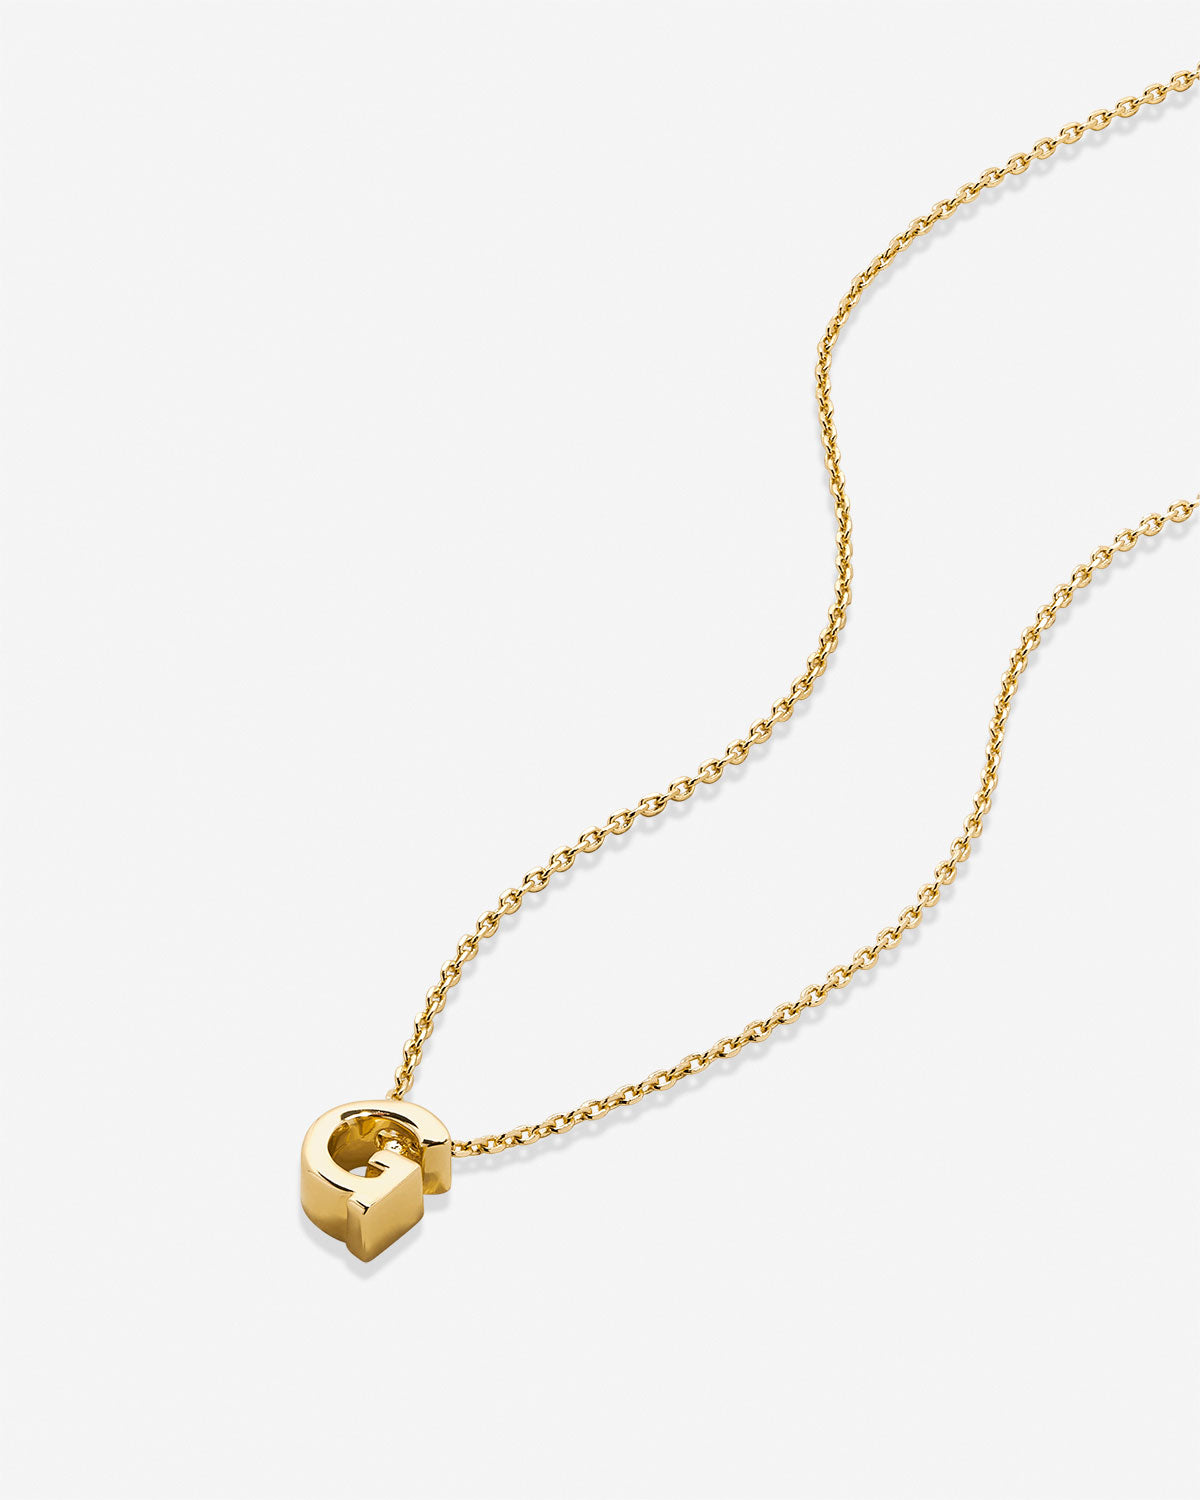 Zoe Initial Necklace with Diamonds - Gold Vermeil - Oak & Luna